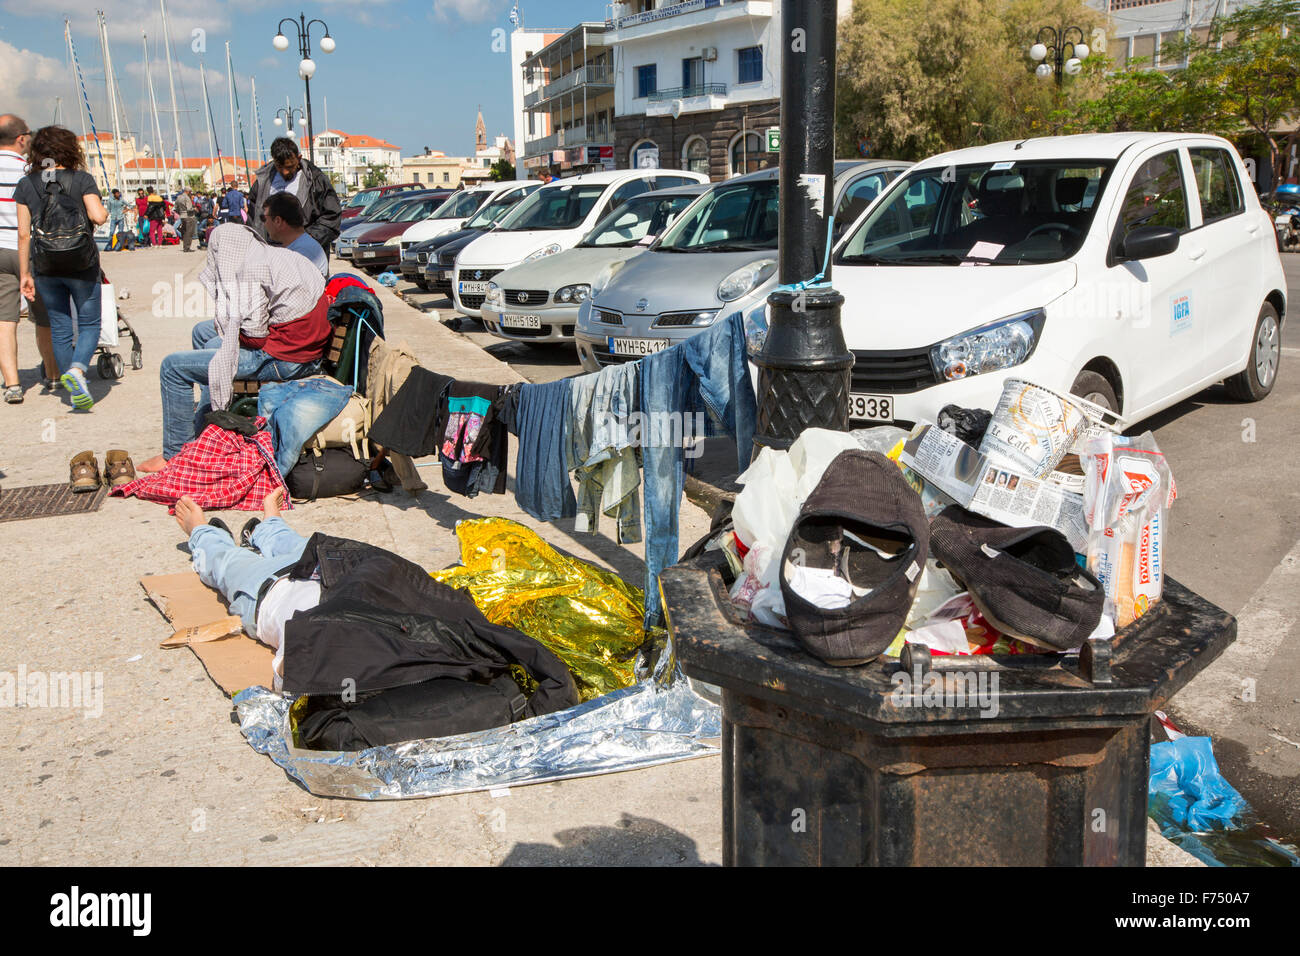 Migrantes sirios que huían de la guerra y escapar a Europa, que han desembarcado en la isla griega de Lesbos, en la costa norte de EFT Foto de stock